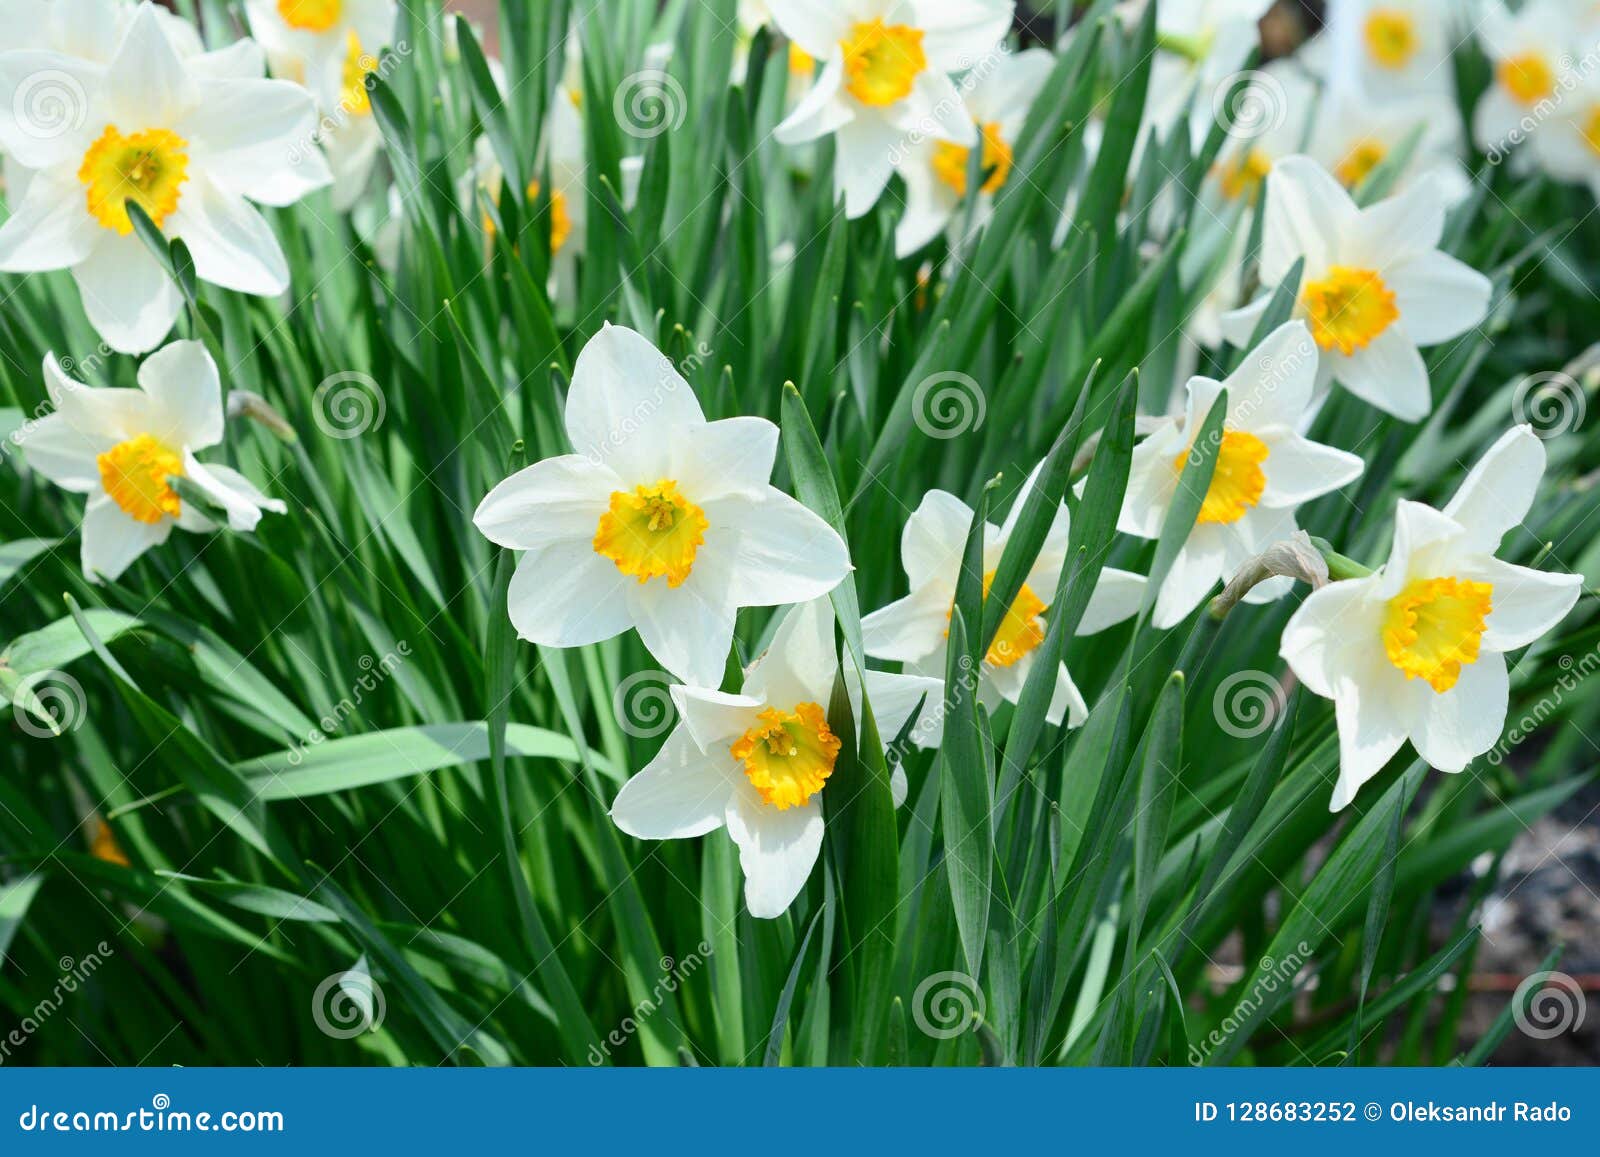 Beau Lit De Fleur De Printemps Avec La Fleur De Narcisse également Connue  Sous Le Nom De Jonquille Photo stock - Image du tulipes, hollande: 128683252